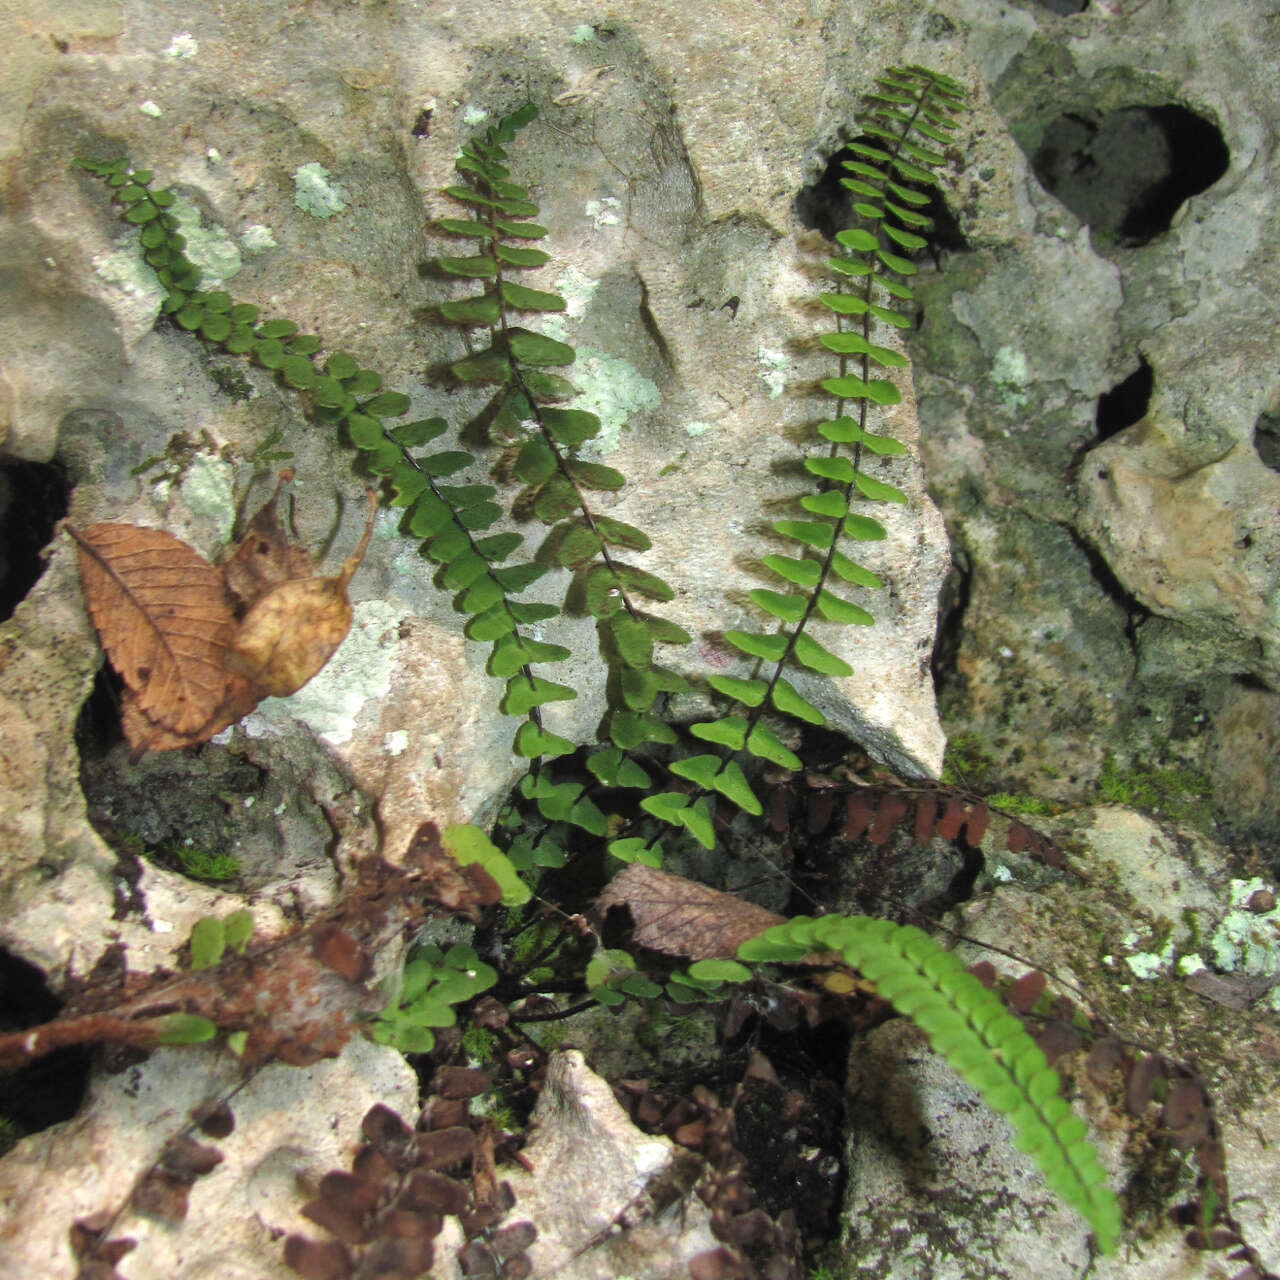 Image of blackstem spleenwort